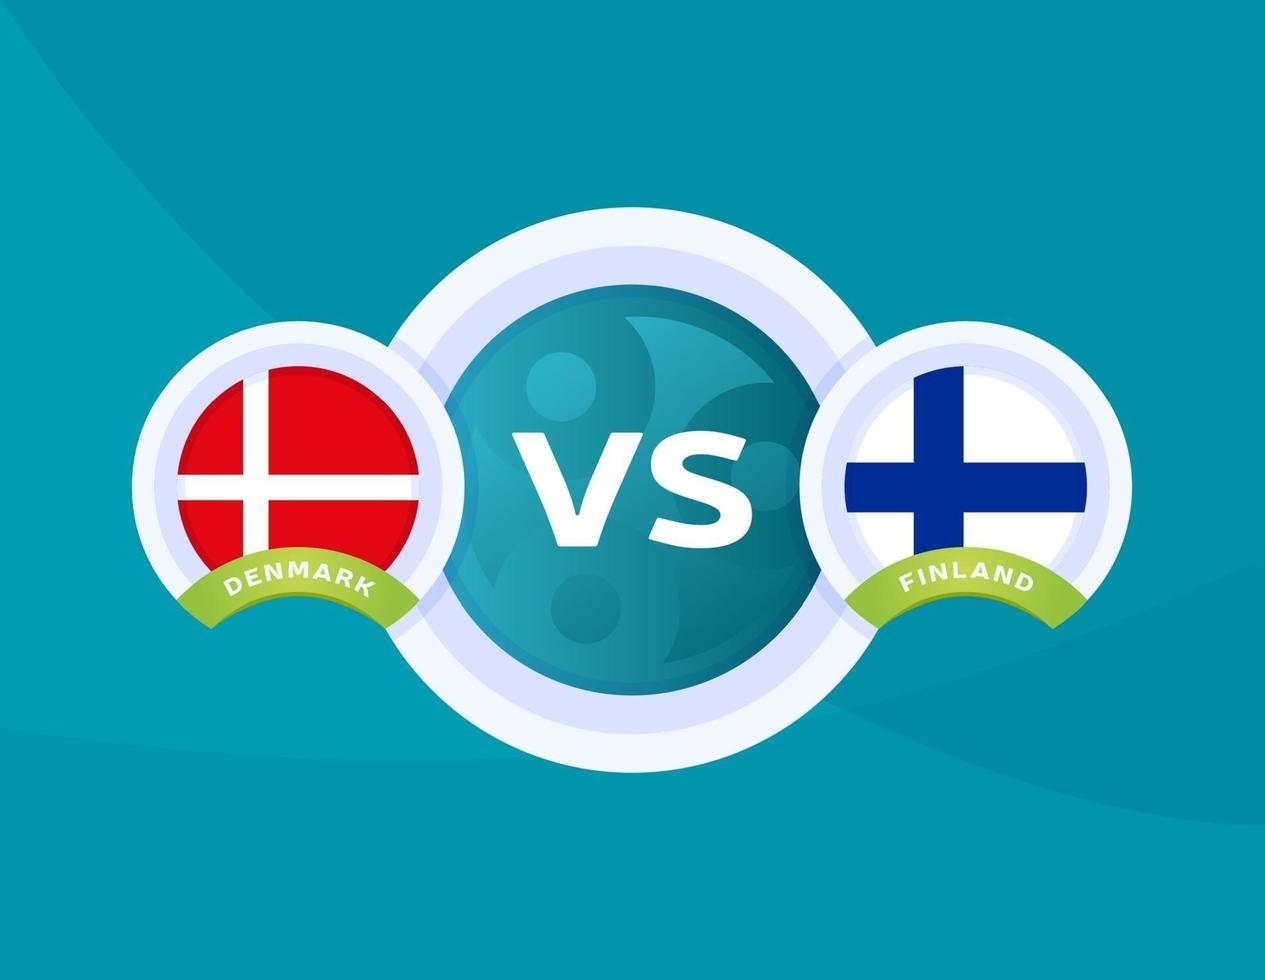 Denmark vs finland live